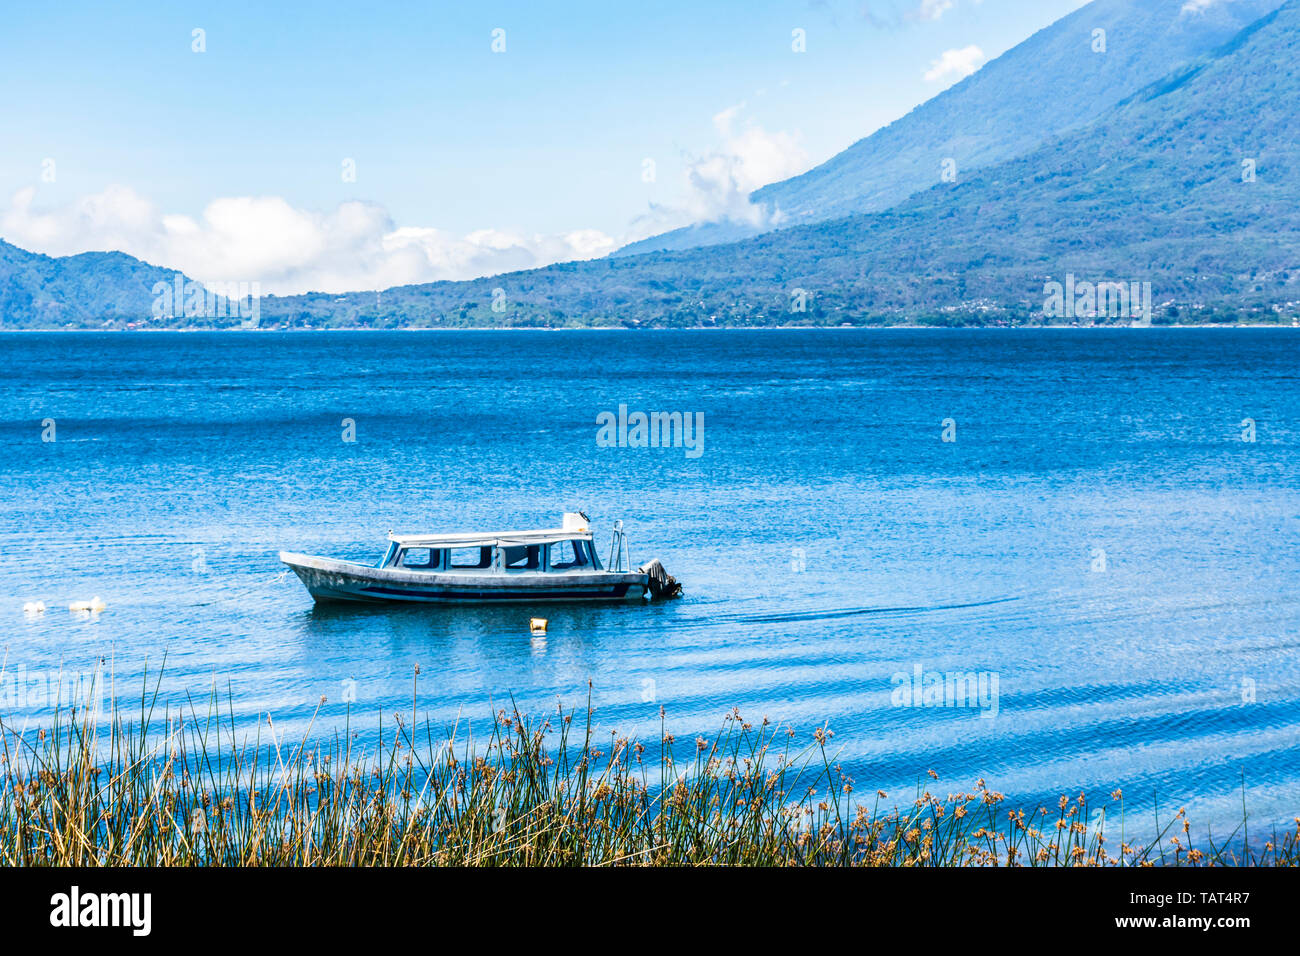 Angelegtes Boot auf See mit Toliman & Atitlan Vulkane hinter am Atitlan See, Guatemala Stockfoto